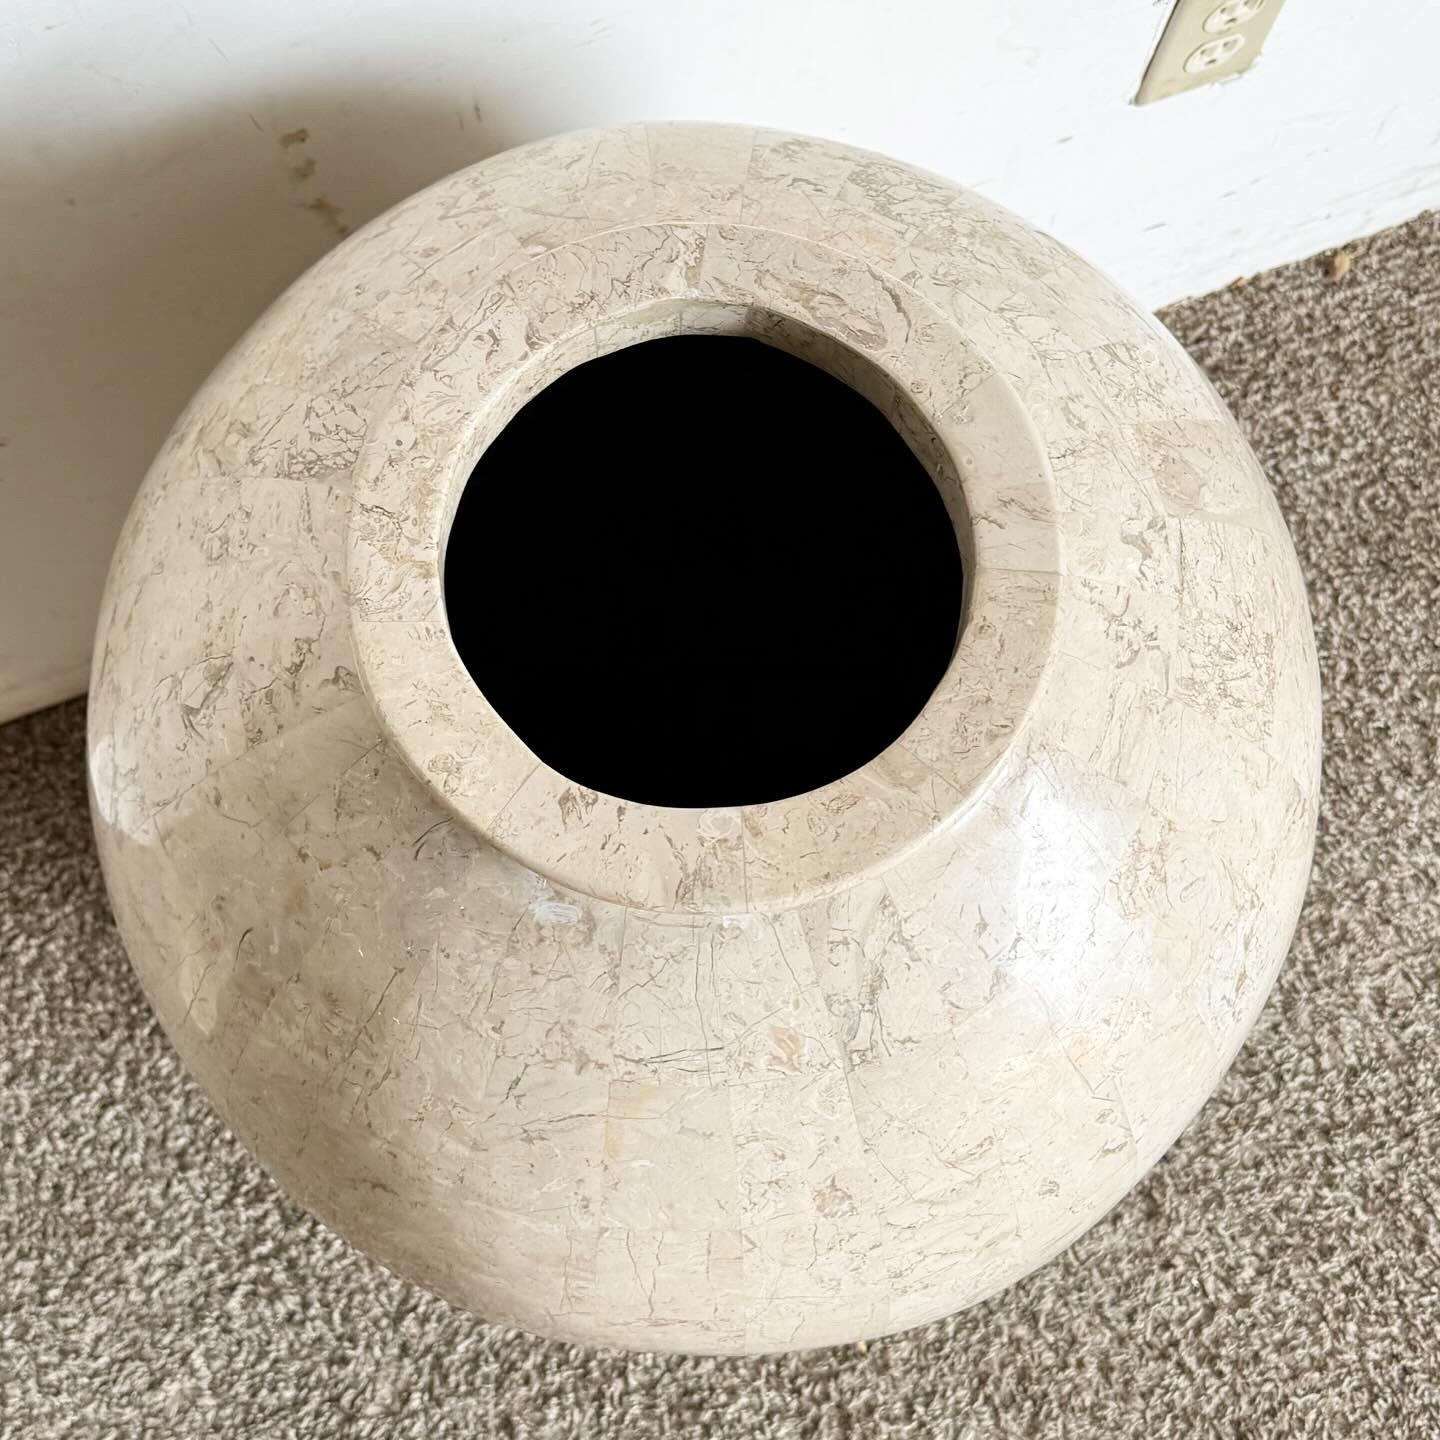 Werten Sie Ihre Einrichtung mit dieser postmodernen Bodenvase aus poliertem und rohem Mosaikstein auf. Mit einer Mischung aus poliertem und rohem Stein bietet diese Vase einen einzigartigen visuellen und texturellen Kontrast. Seine geometrischen